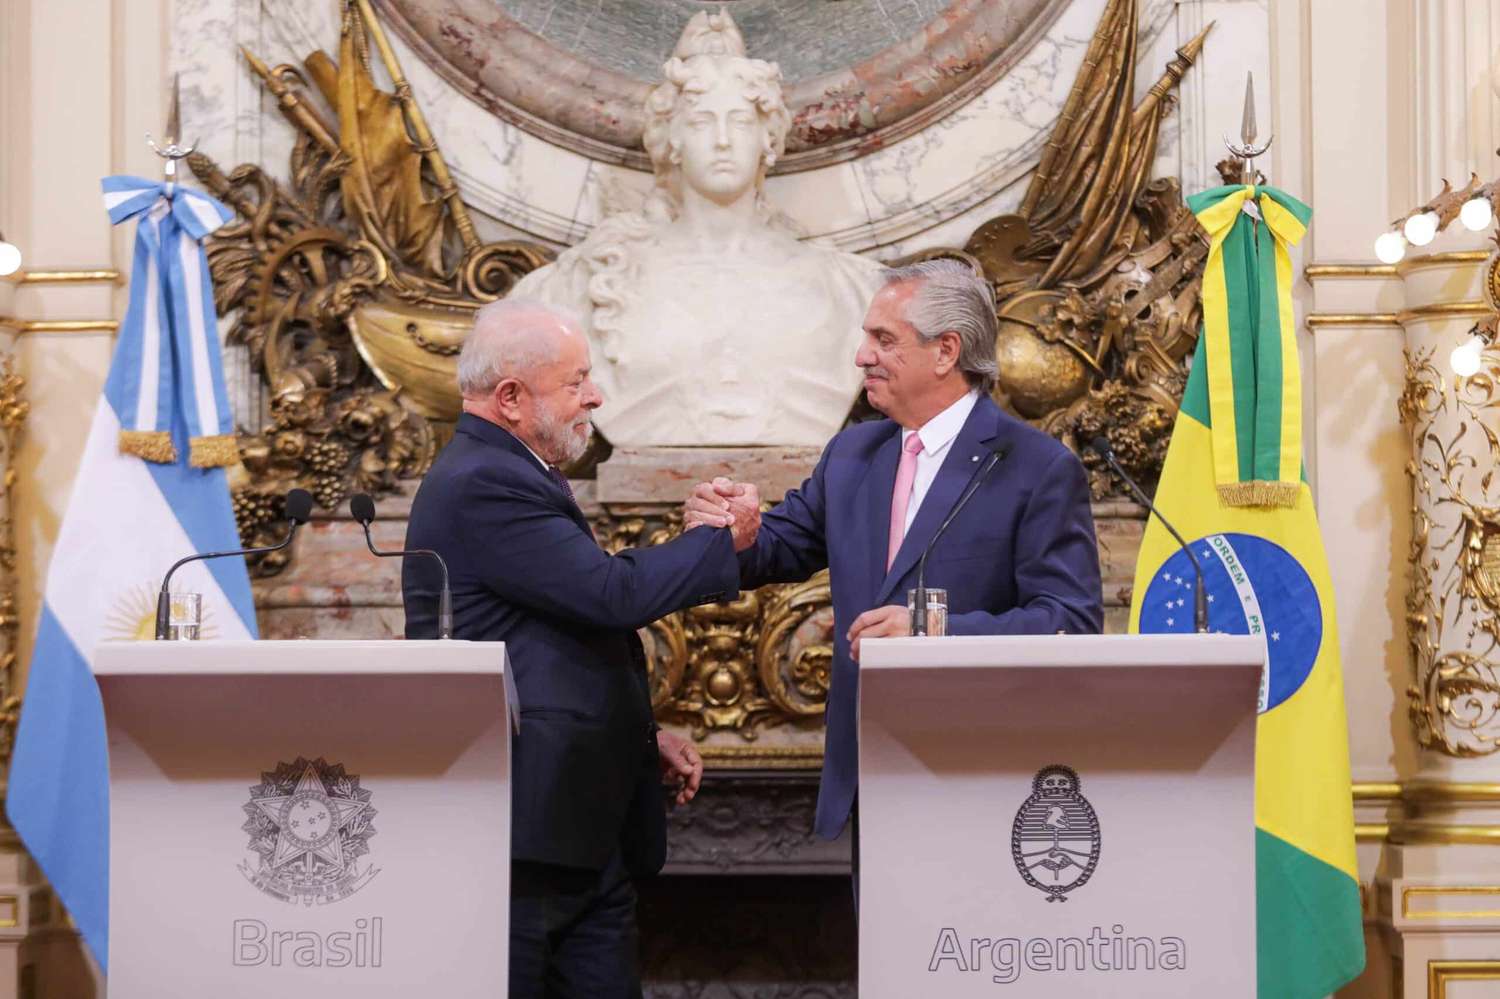 Lula en Argentina: Mercosur, restricciones y problemas de infraestructura